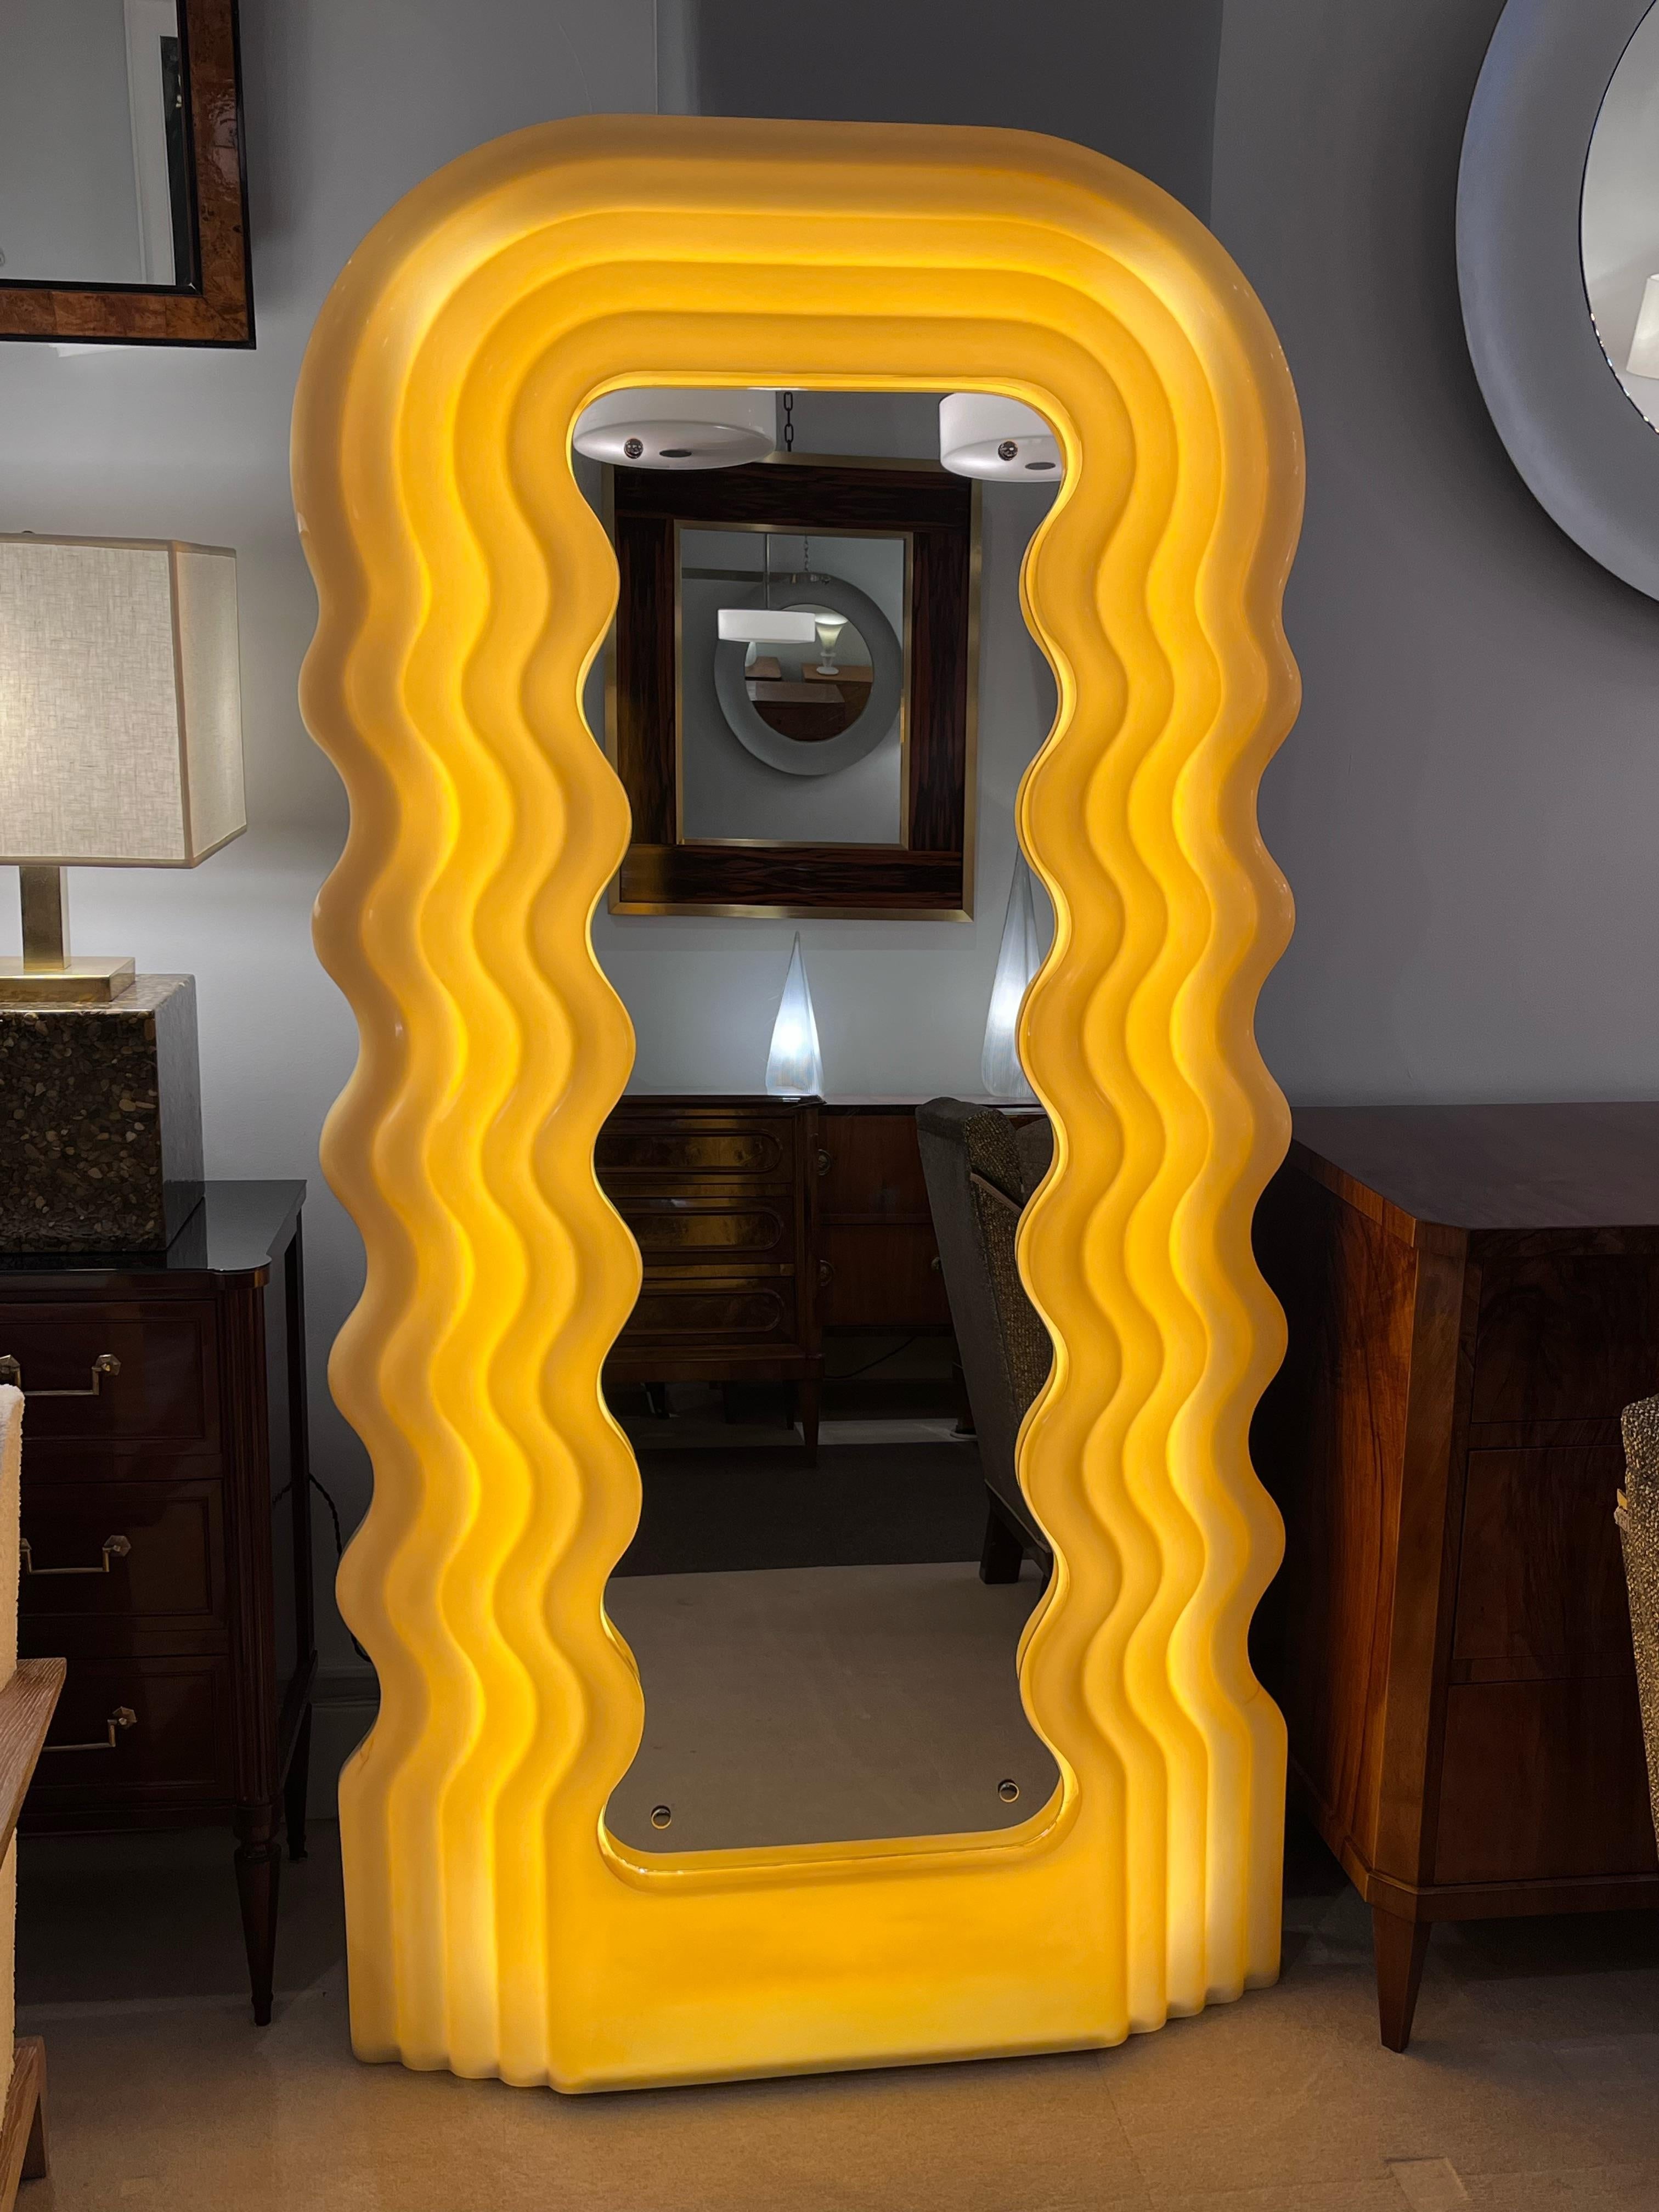 Modèle original de la première édition du miroir Ultrafragola conçu par Ettore Sottsass pour Poltronova. Miroir lumineux avec coque en acrylique faite de vagues superposées autour du miroir central qui imite le même design ondulé. Modèle original de